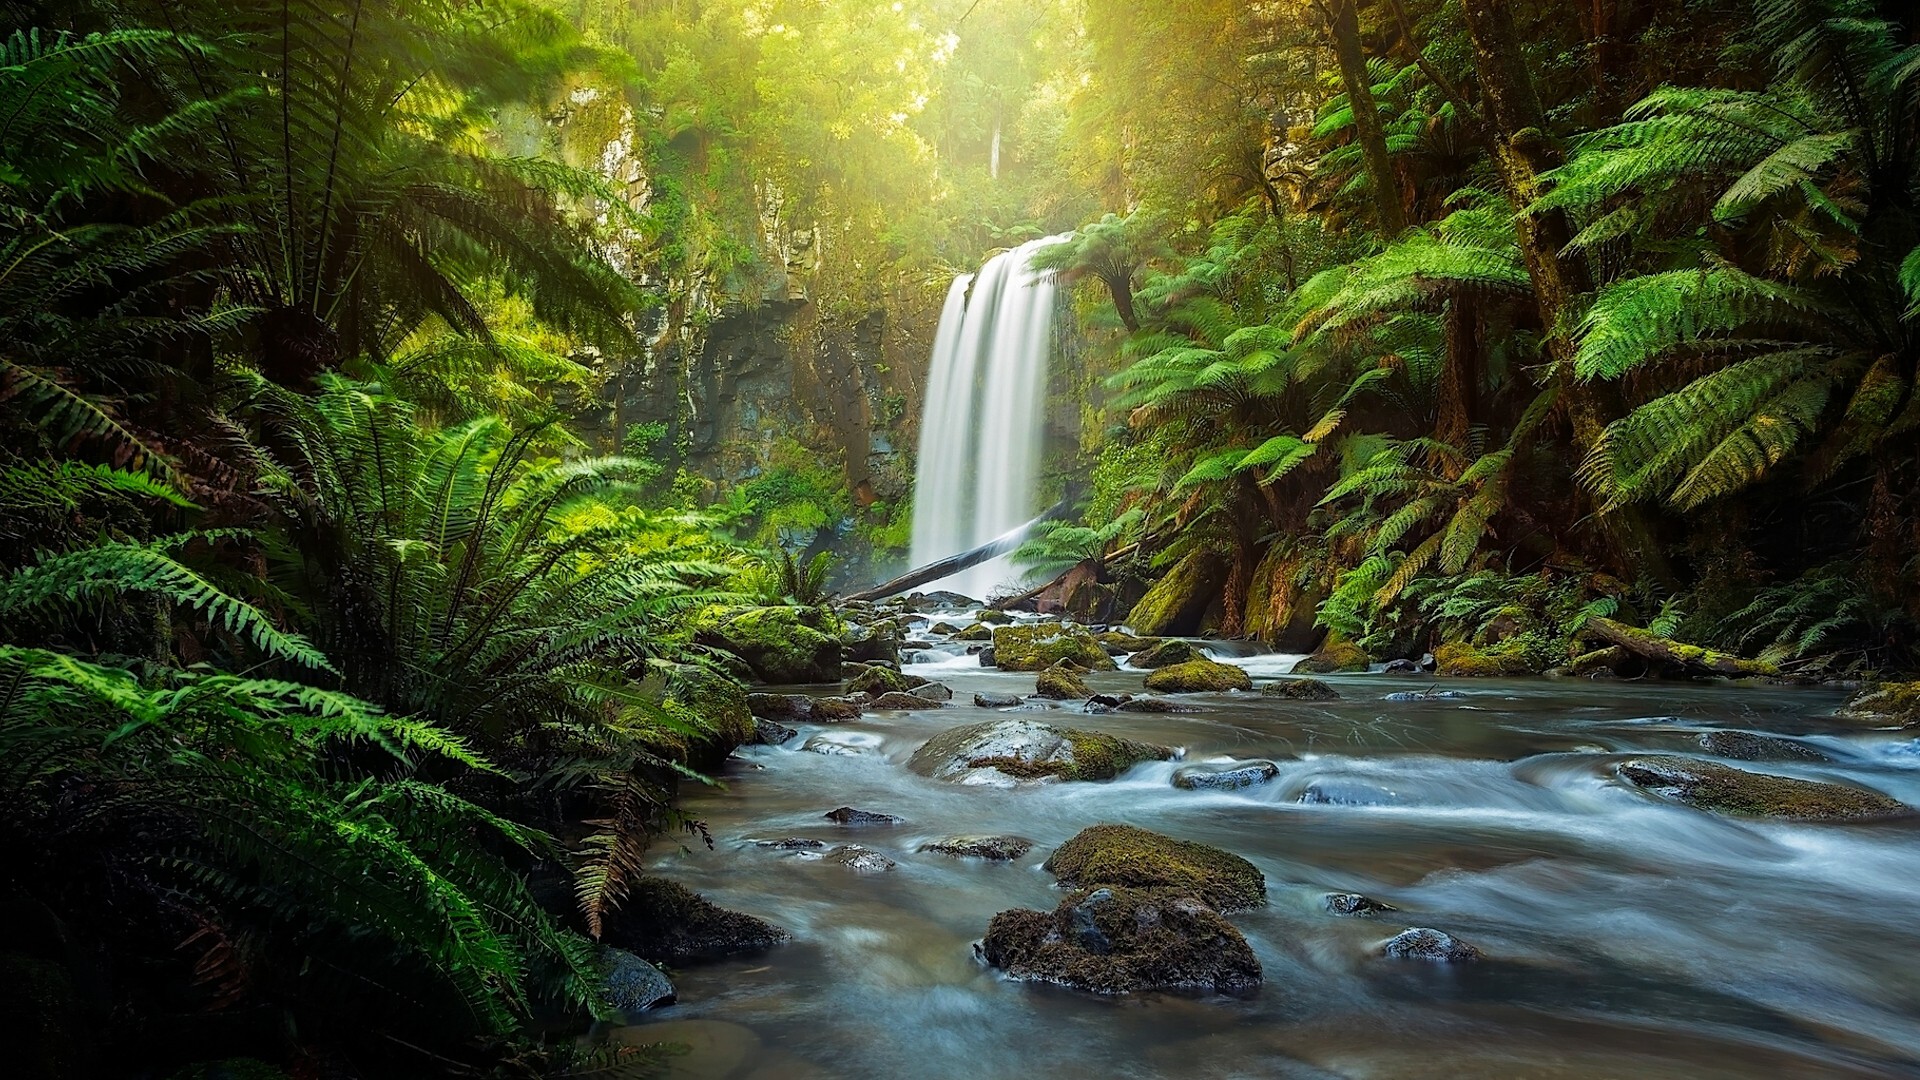 Скачать обои бесплатно Водопады, Водопад, Лес, Зеленый, Тропический, Ручей, Земля/природа картинка на рабочий стол ПК